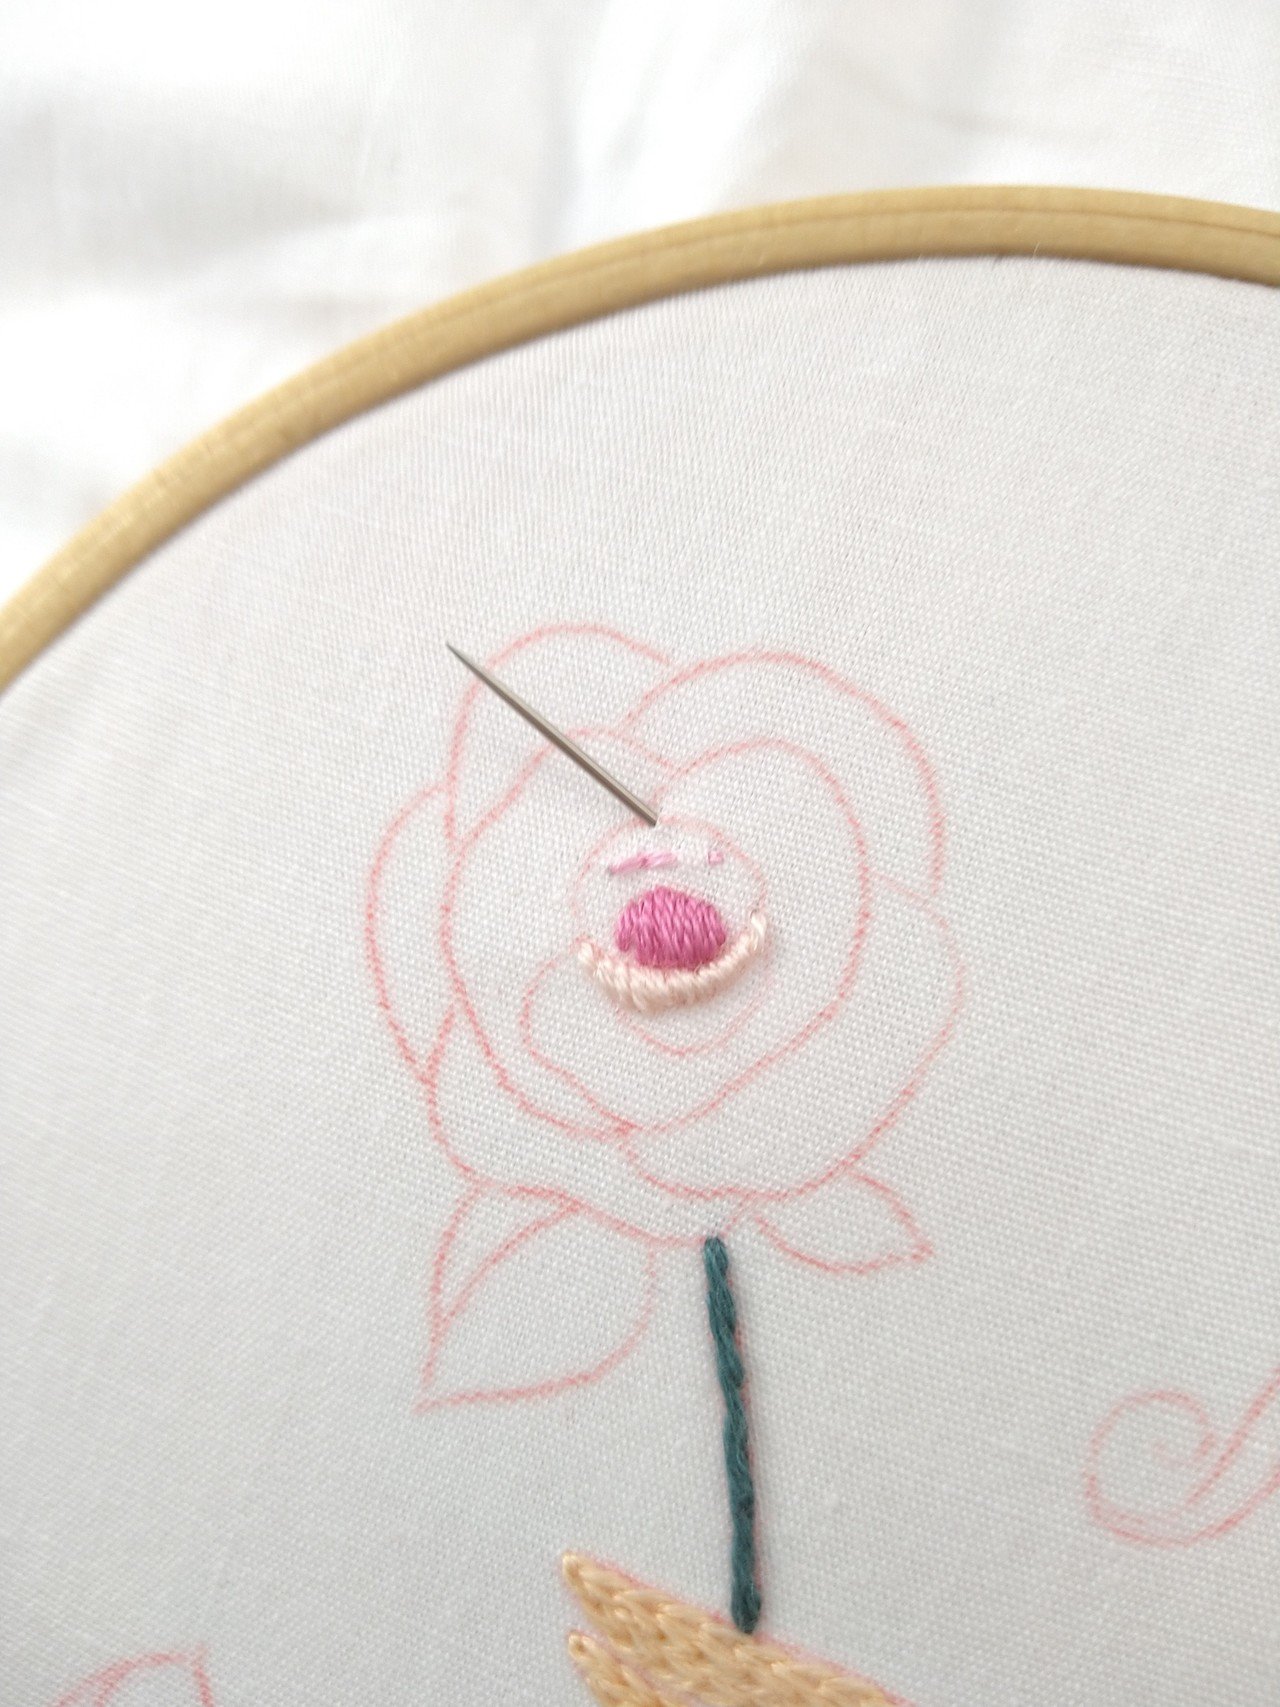 ローズの刺繍枠キットを作ろう ステップ4 バラの花の刺繍 Apostrophe S Note